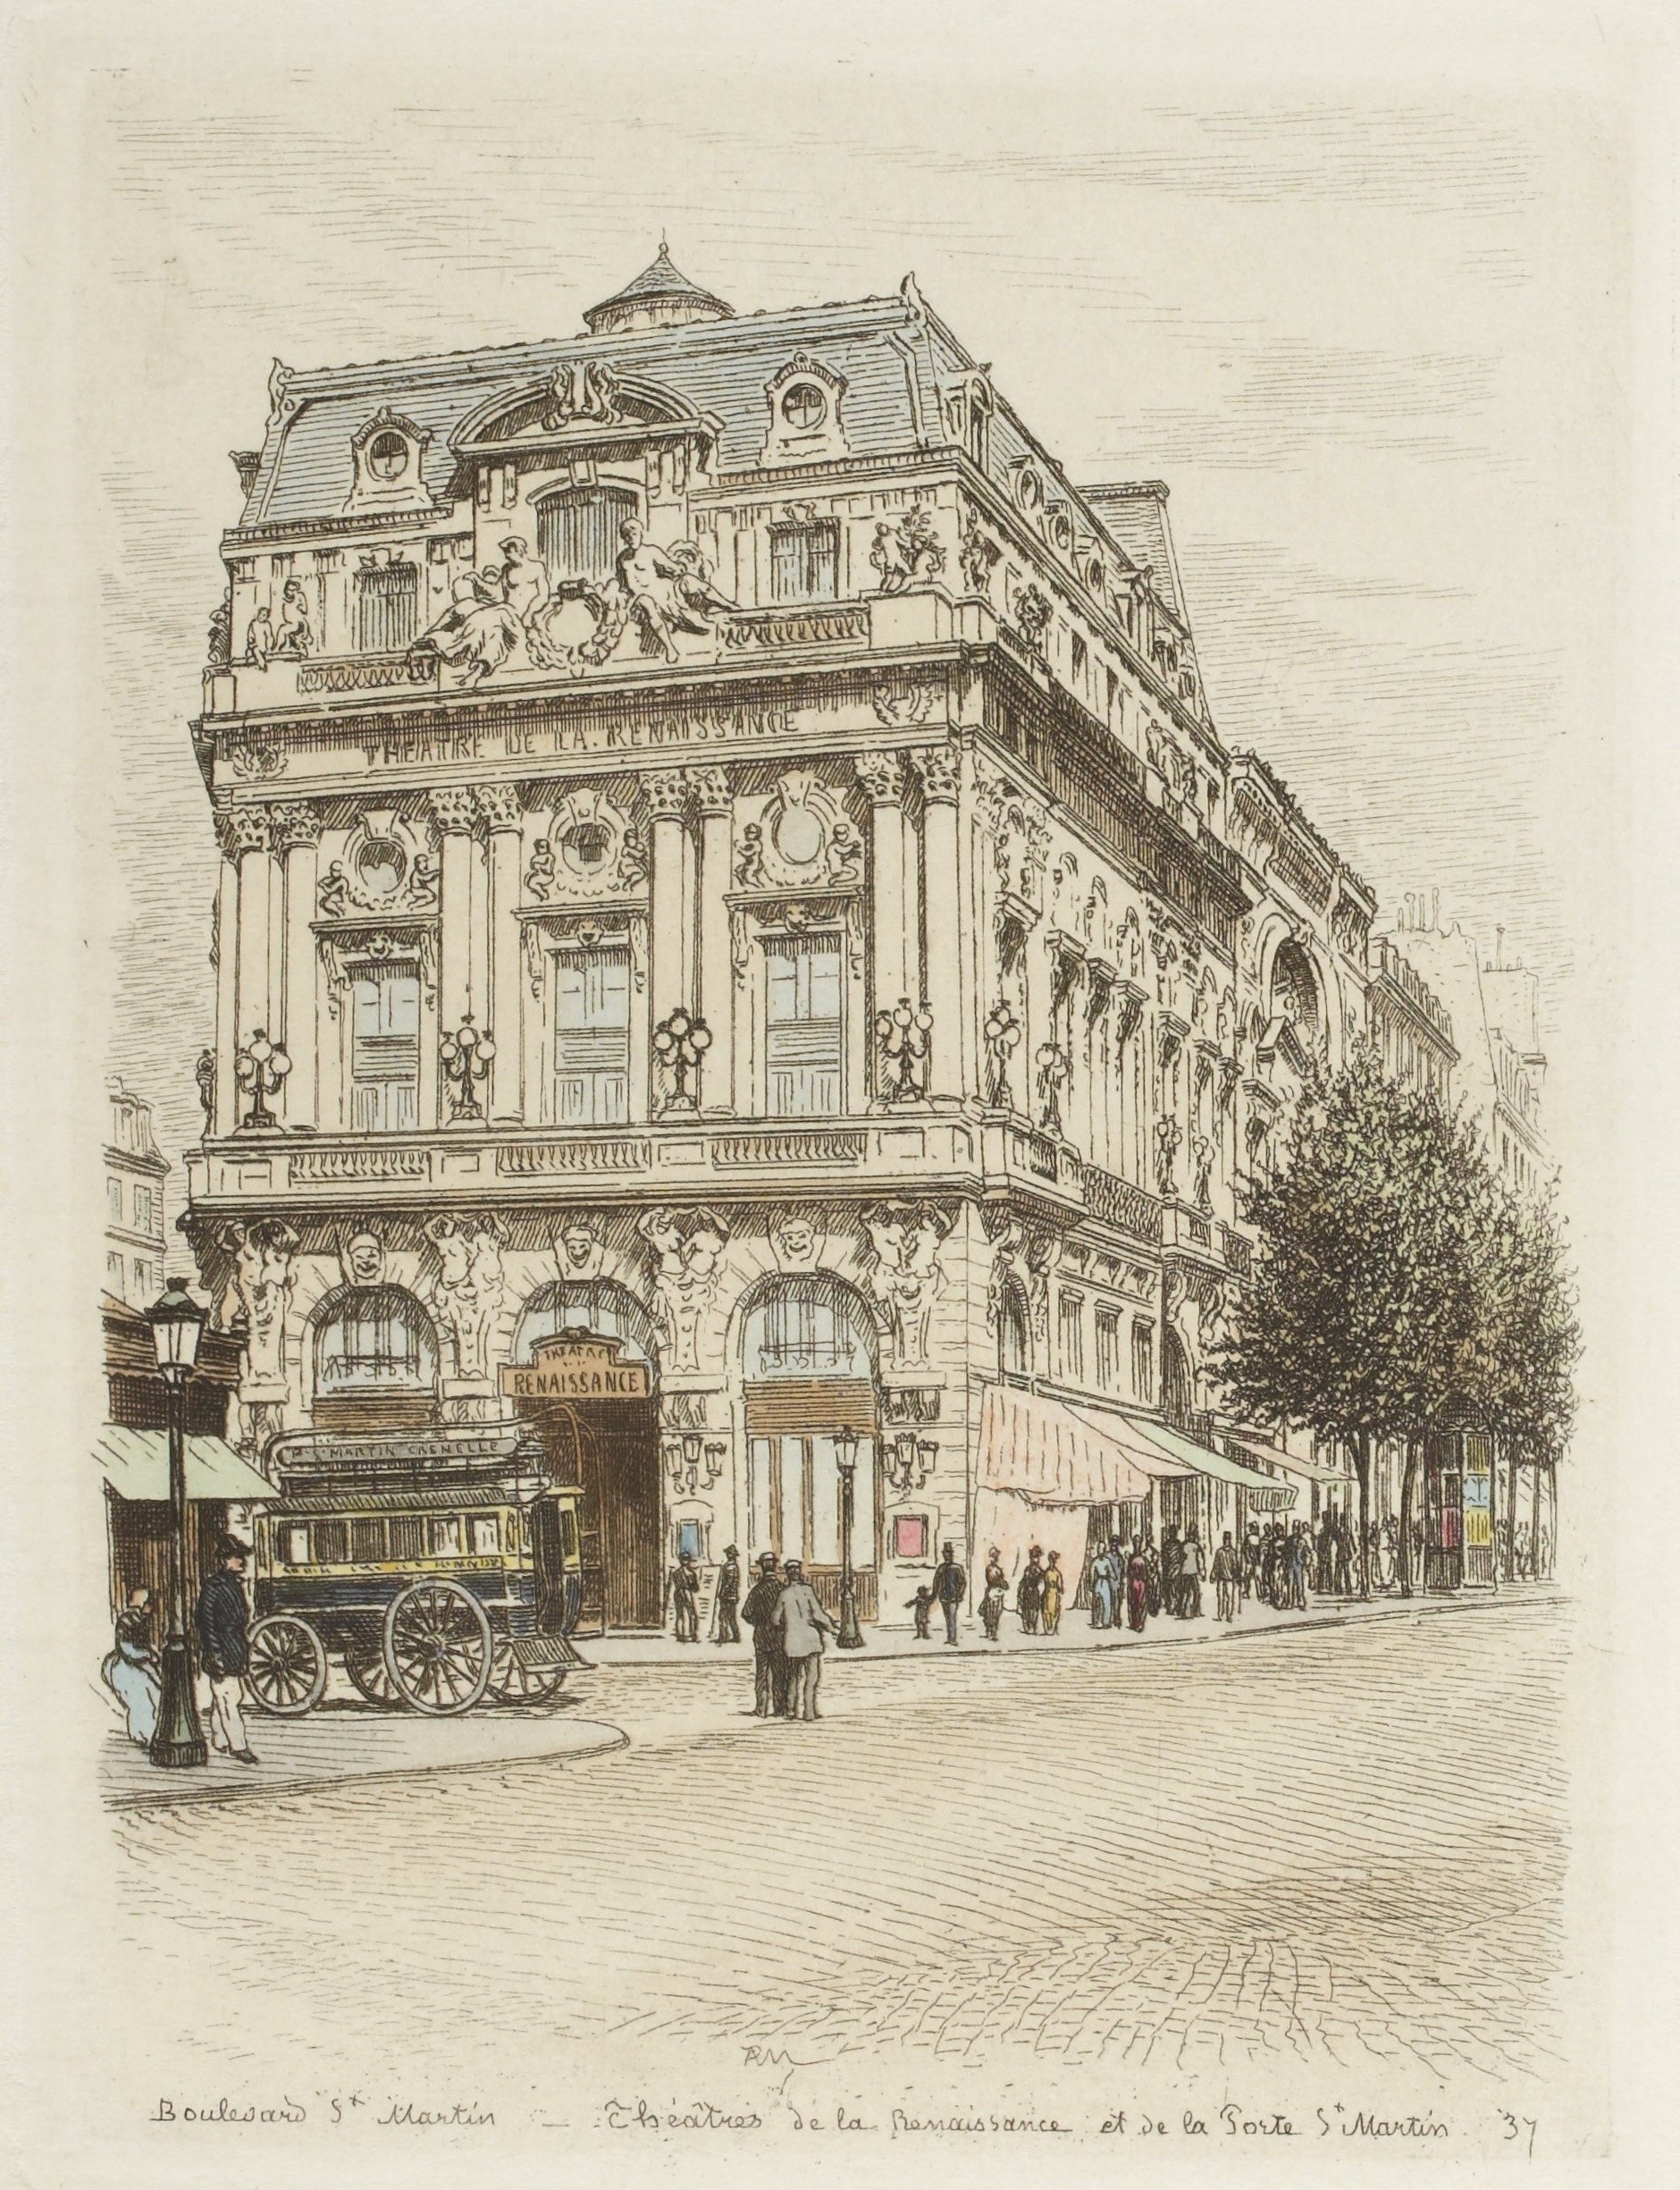 Das von Charles de Lalande geplante Théâtre de la Renaissance in Paris am Boulevard Saint-Martin ist ein typischer Bau des französischen Eklektizismus. Das Theater wurde 1873 eröffnet.